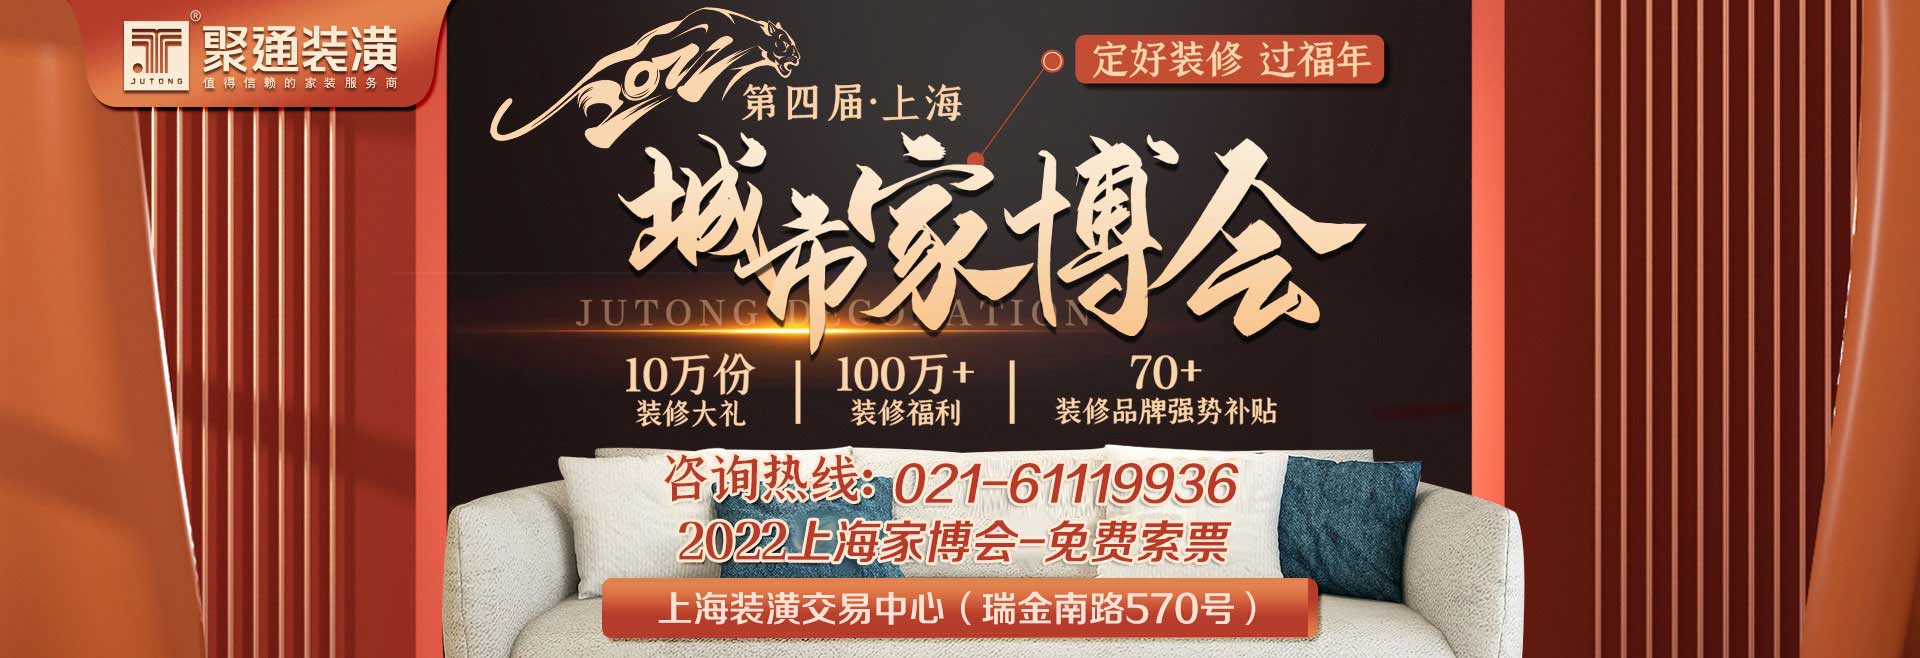 上海家博会广告图